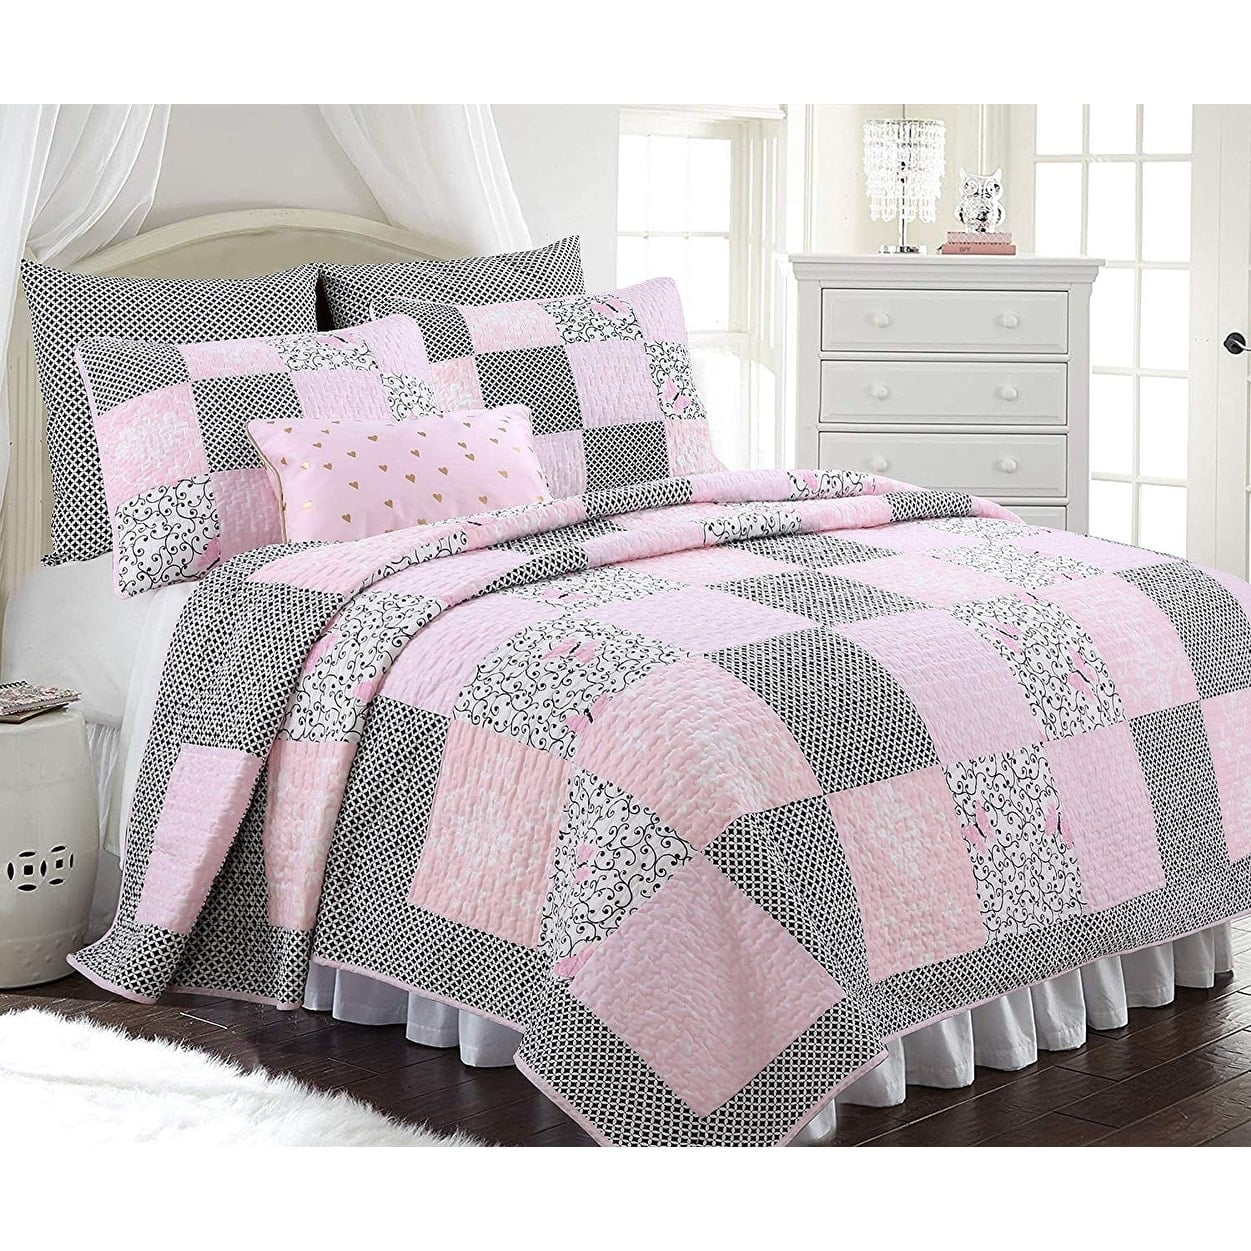 Bedspread Aldiana 3-Piece Reversible Cotton Quilt Set Coverlet 